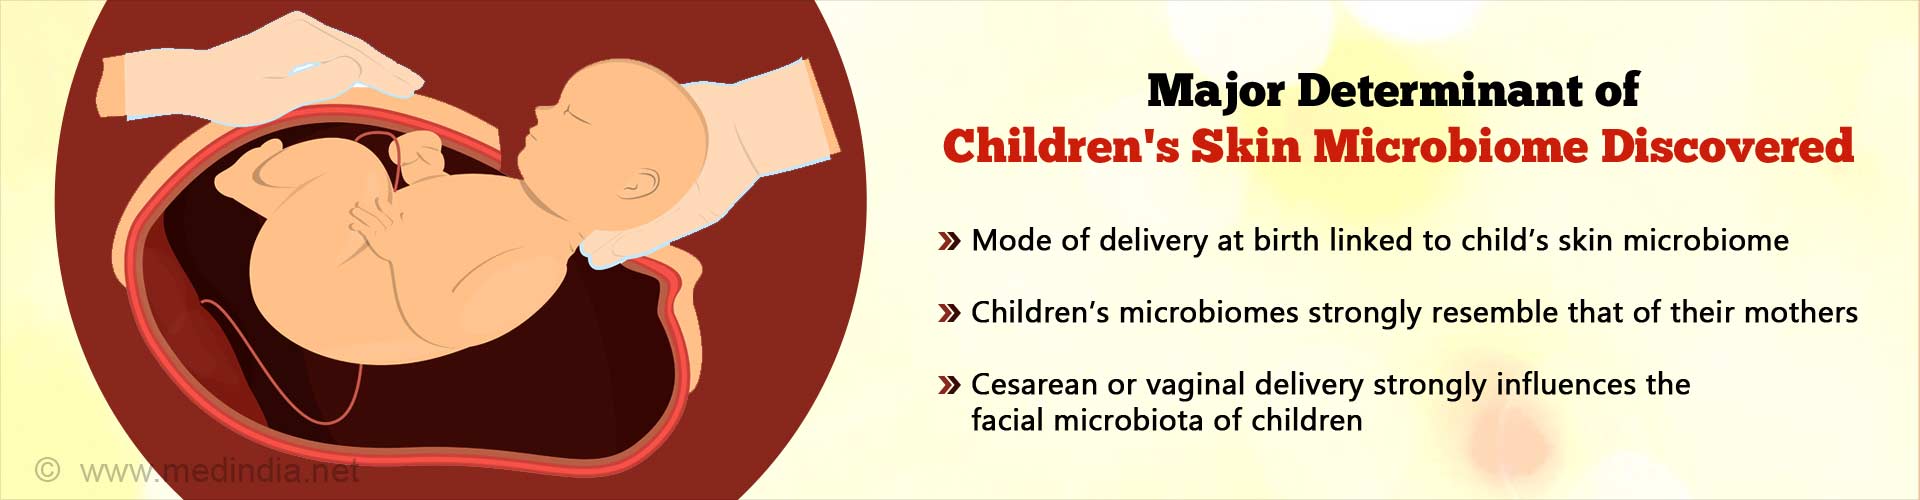 发现儿童皮肤微生物群的主要决定因素。出生时的分娩方式与孩子的皮肤微生物群有关。儿童的微生物群与母亲非常相似。剖宫产或阴道分娩强烈影响儿童面部微生物群。